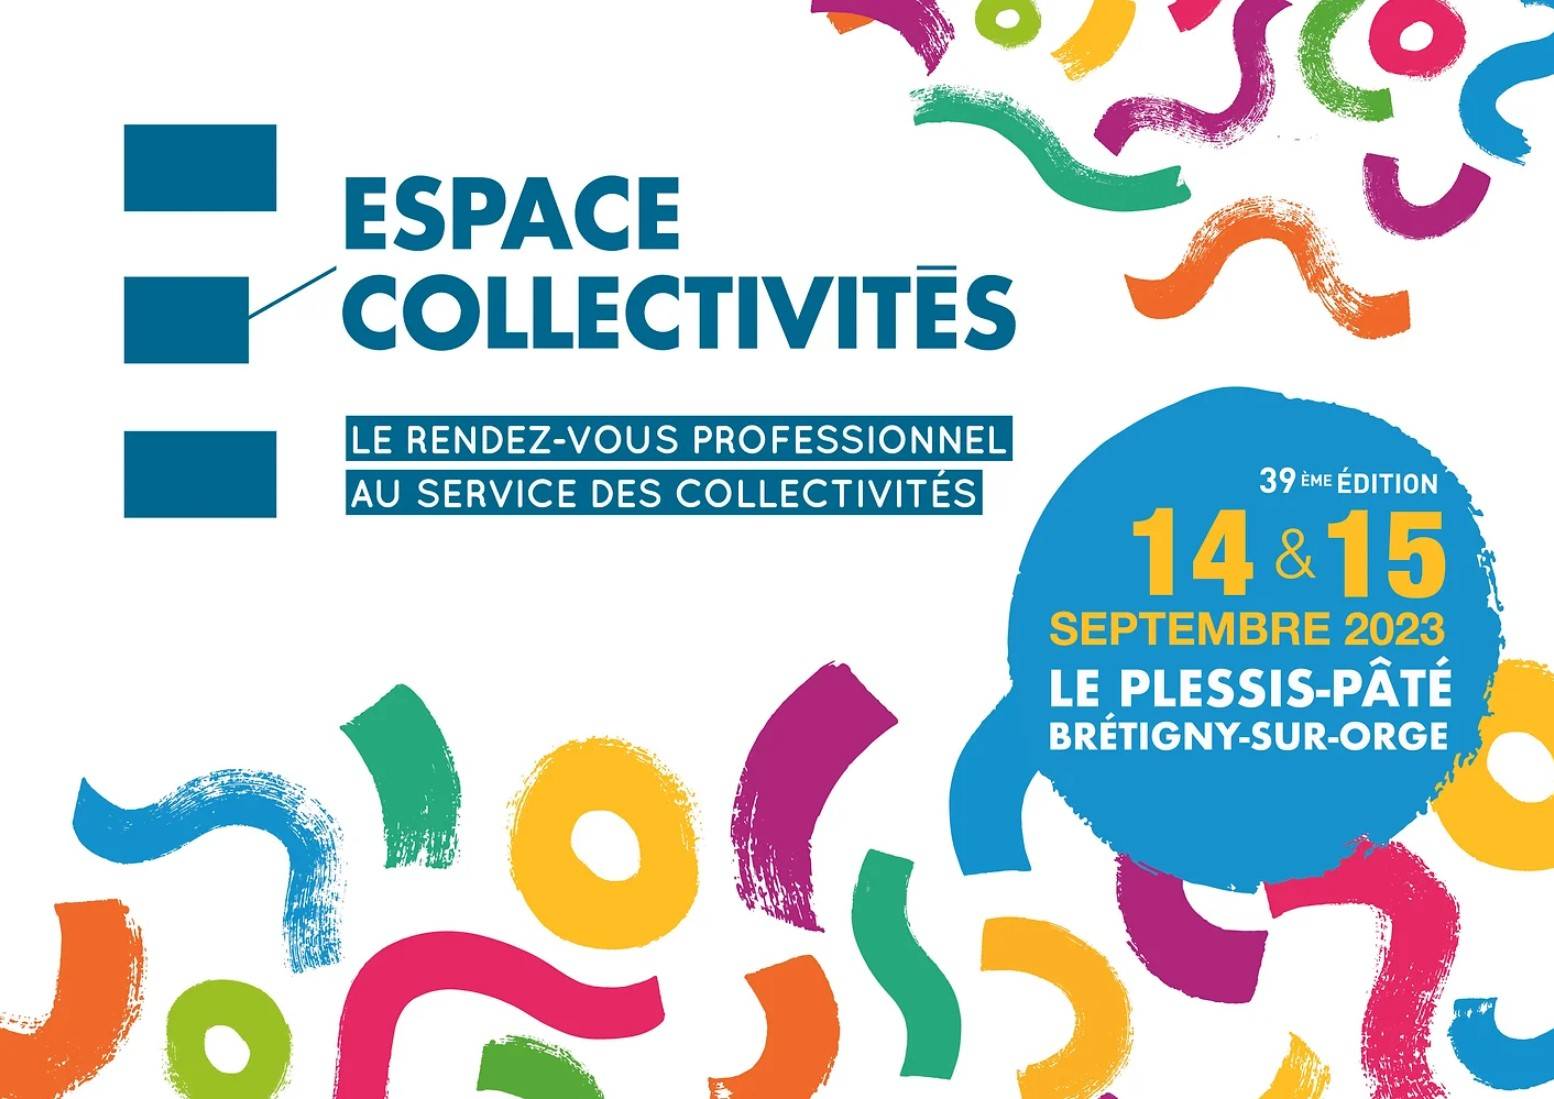 Retrouvez nous à la 39 édition de l'espace collectivité proche de Paris